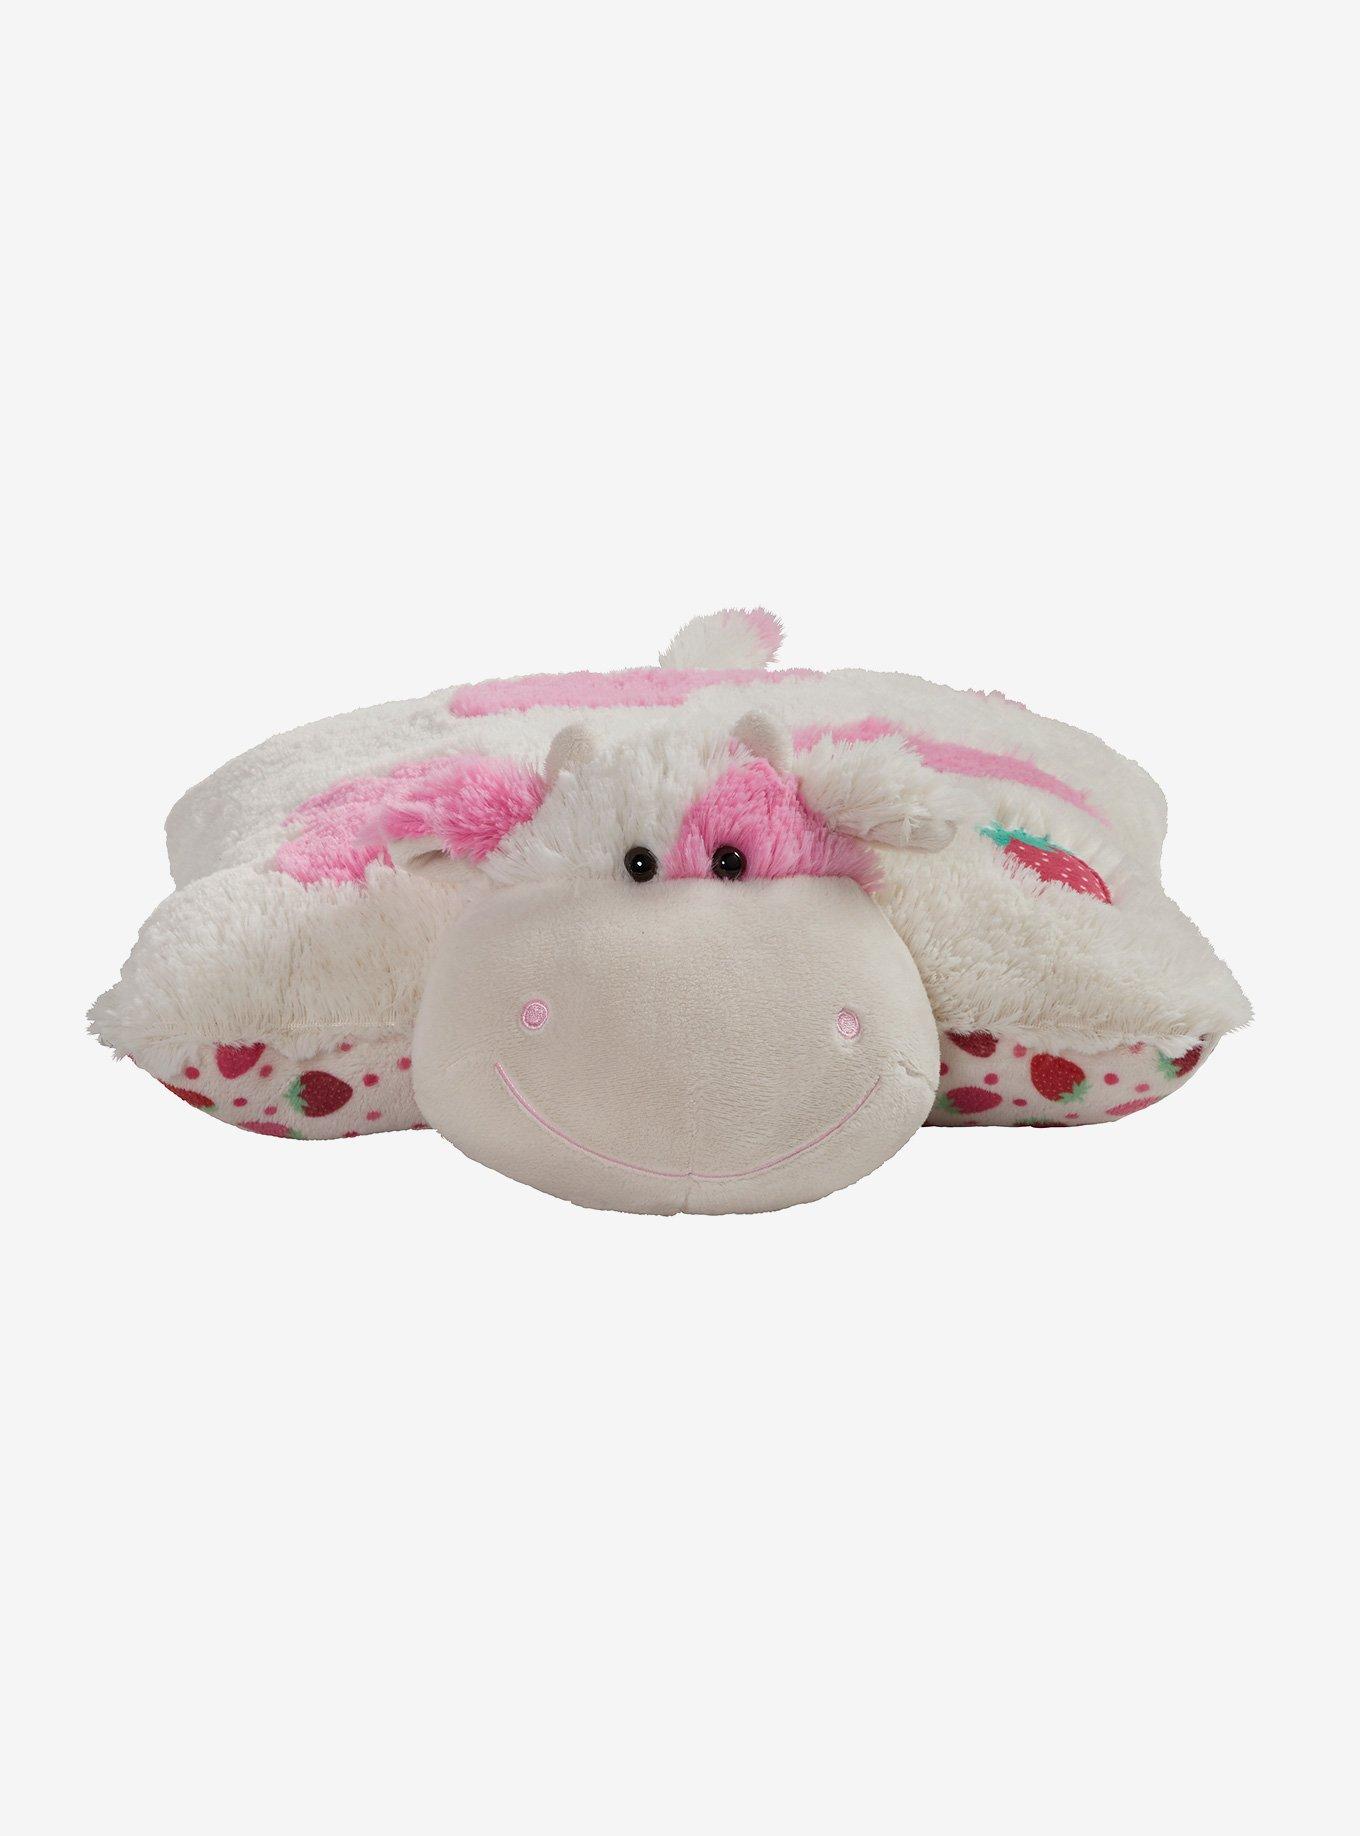 Milkshake Cow Sweet Scented Pillow Pet – Large Plush Stuffed Animal Pillow